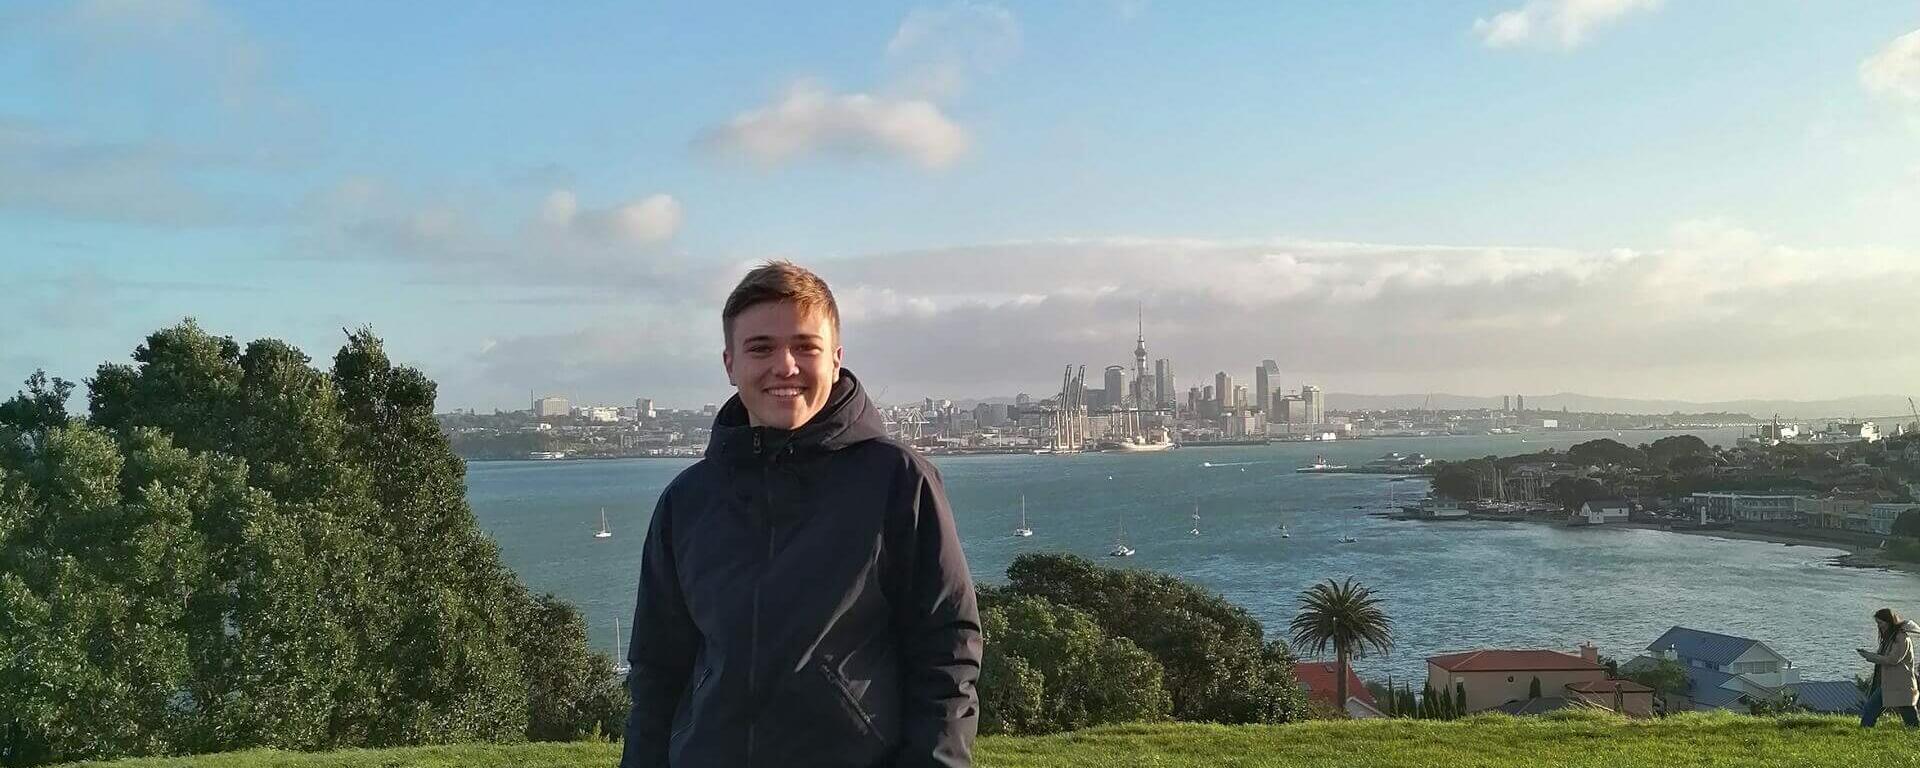 Lukas Erfahrungsbericht zum Auslandssemester an der University of Auckland